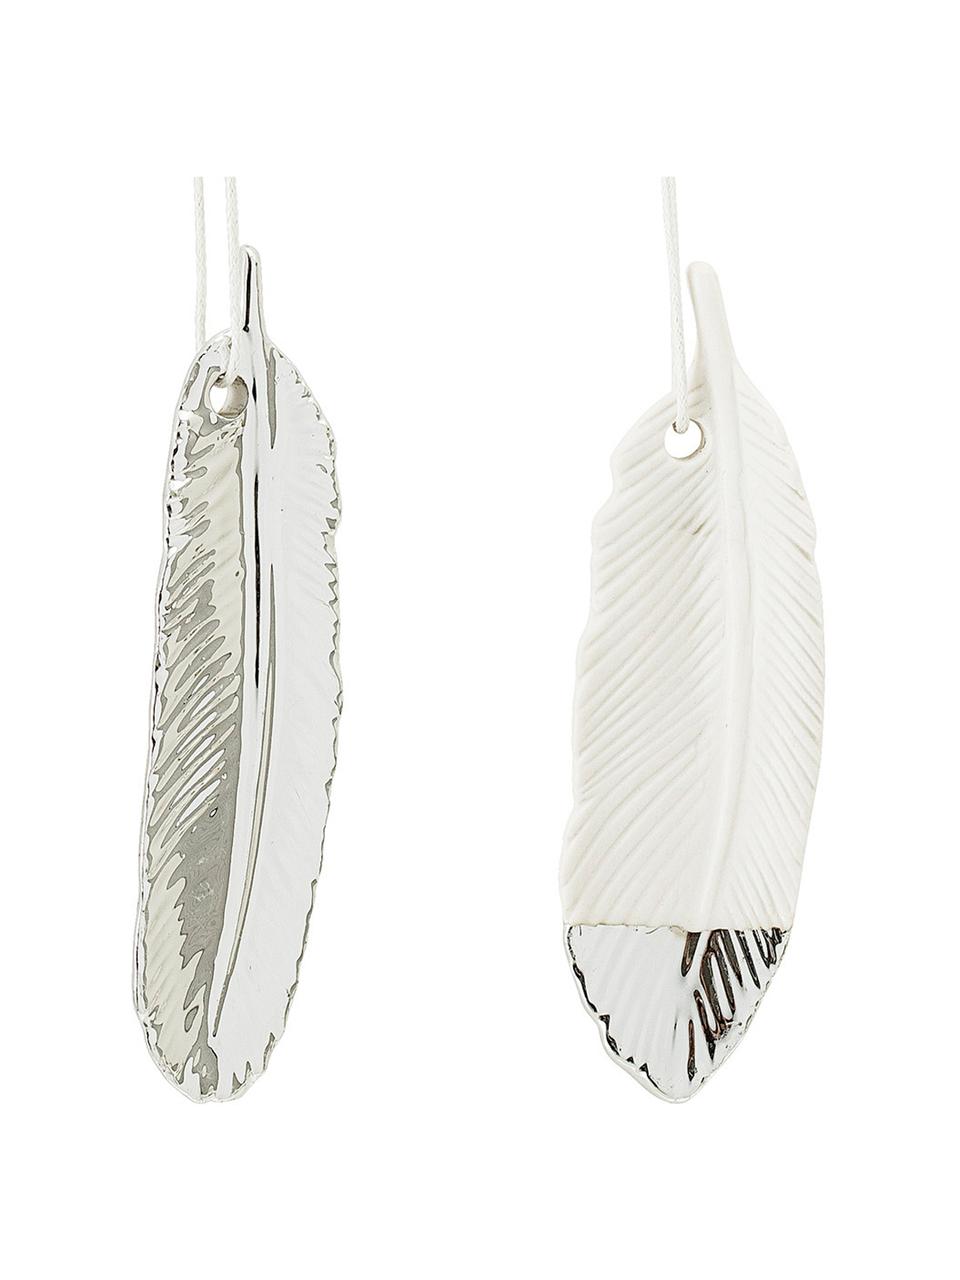 Zestaw zawieszek dekoracyjnych Feathers, 2 elem., Kamionka, Srebrny, biały, S 3 x W 10 cm